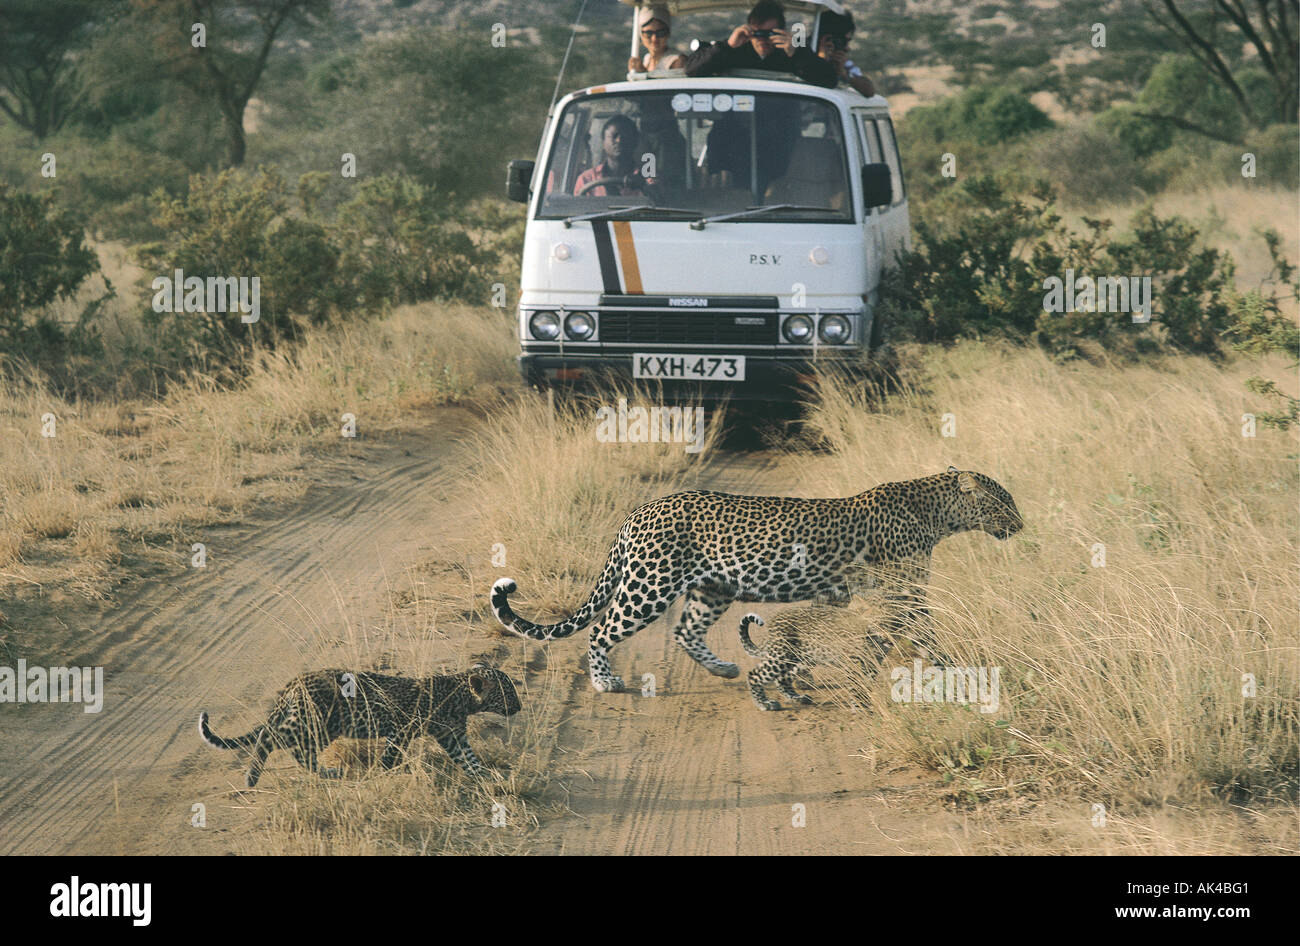 Weibliche Leoparden und zwei jungen überqueren eine Spur vor einem Kleinbus in Samburu National Reserve Kenia in Ostafrika Stockfoto